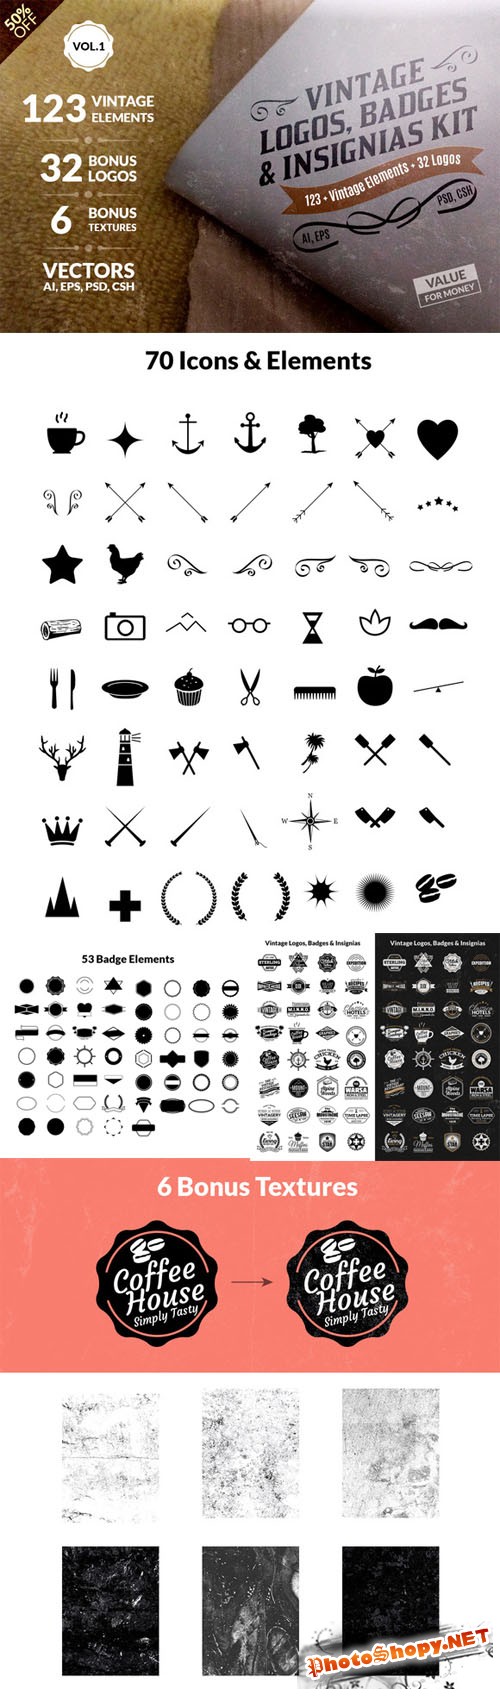 CreativeMarket - Vintage Logos, Badges Kit-Value Pack